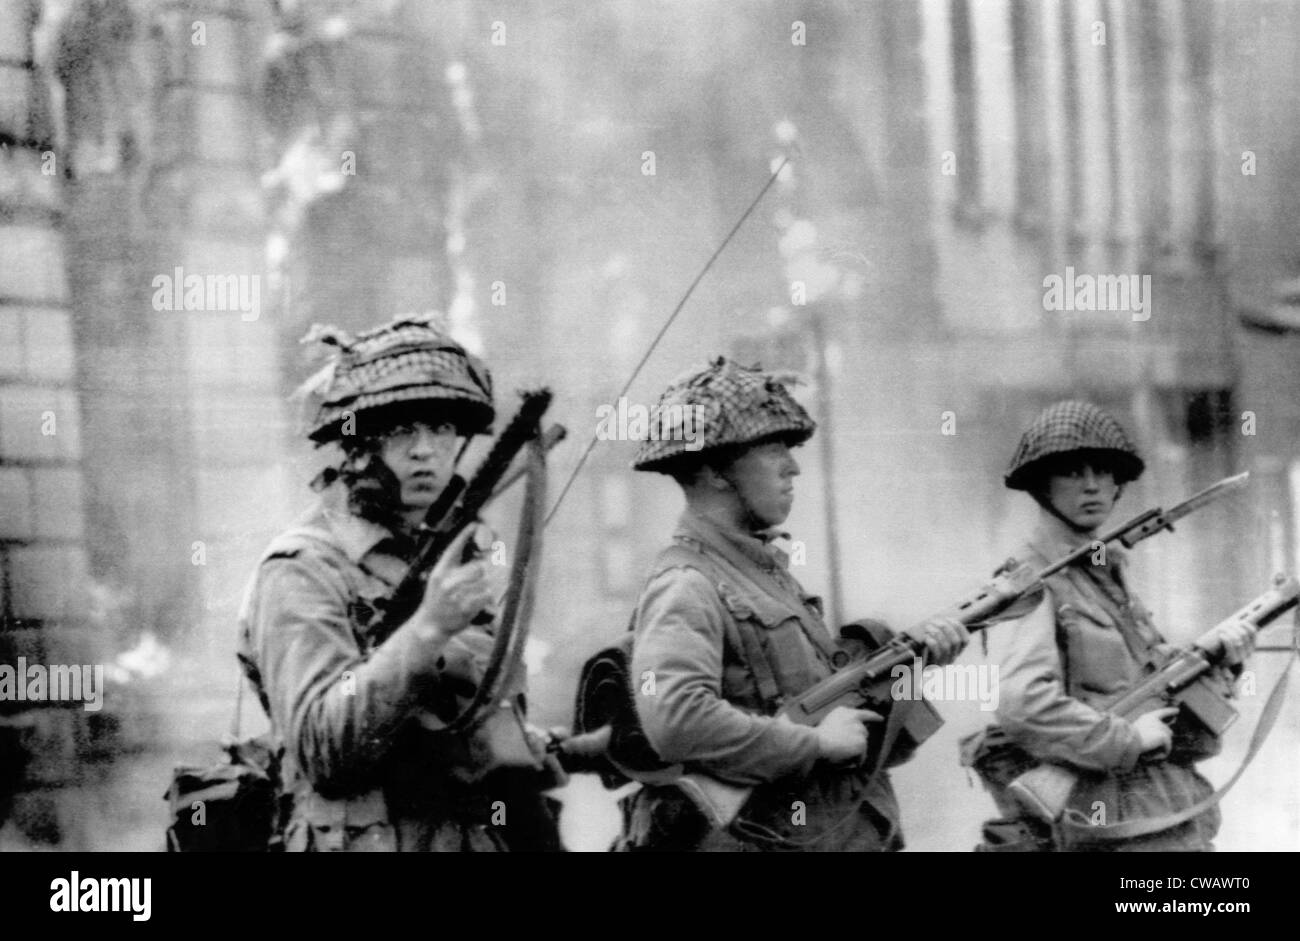 Soldats britanniques montent la garde dans la section Falls Road de Belfast. Le 15 août 1969. Avec la permission de : Archives CSU/Everett Collection. Banque D'Images